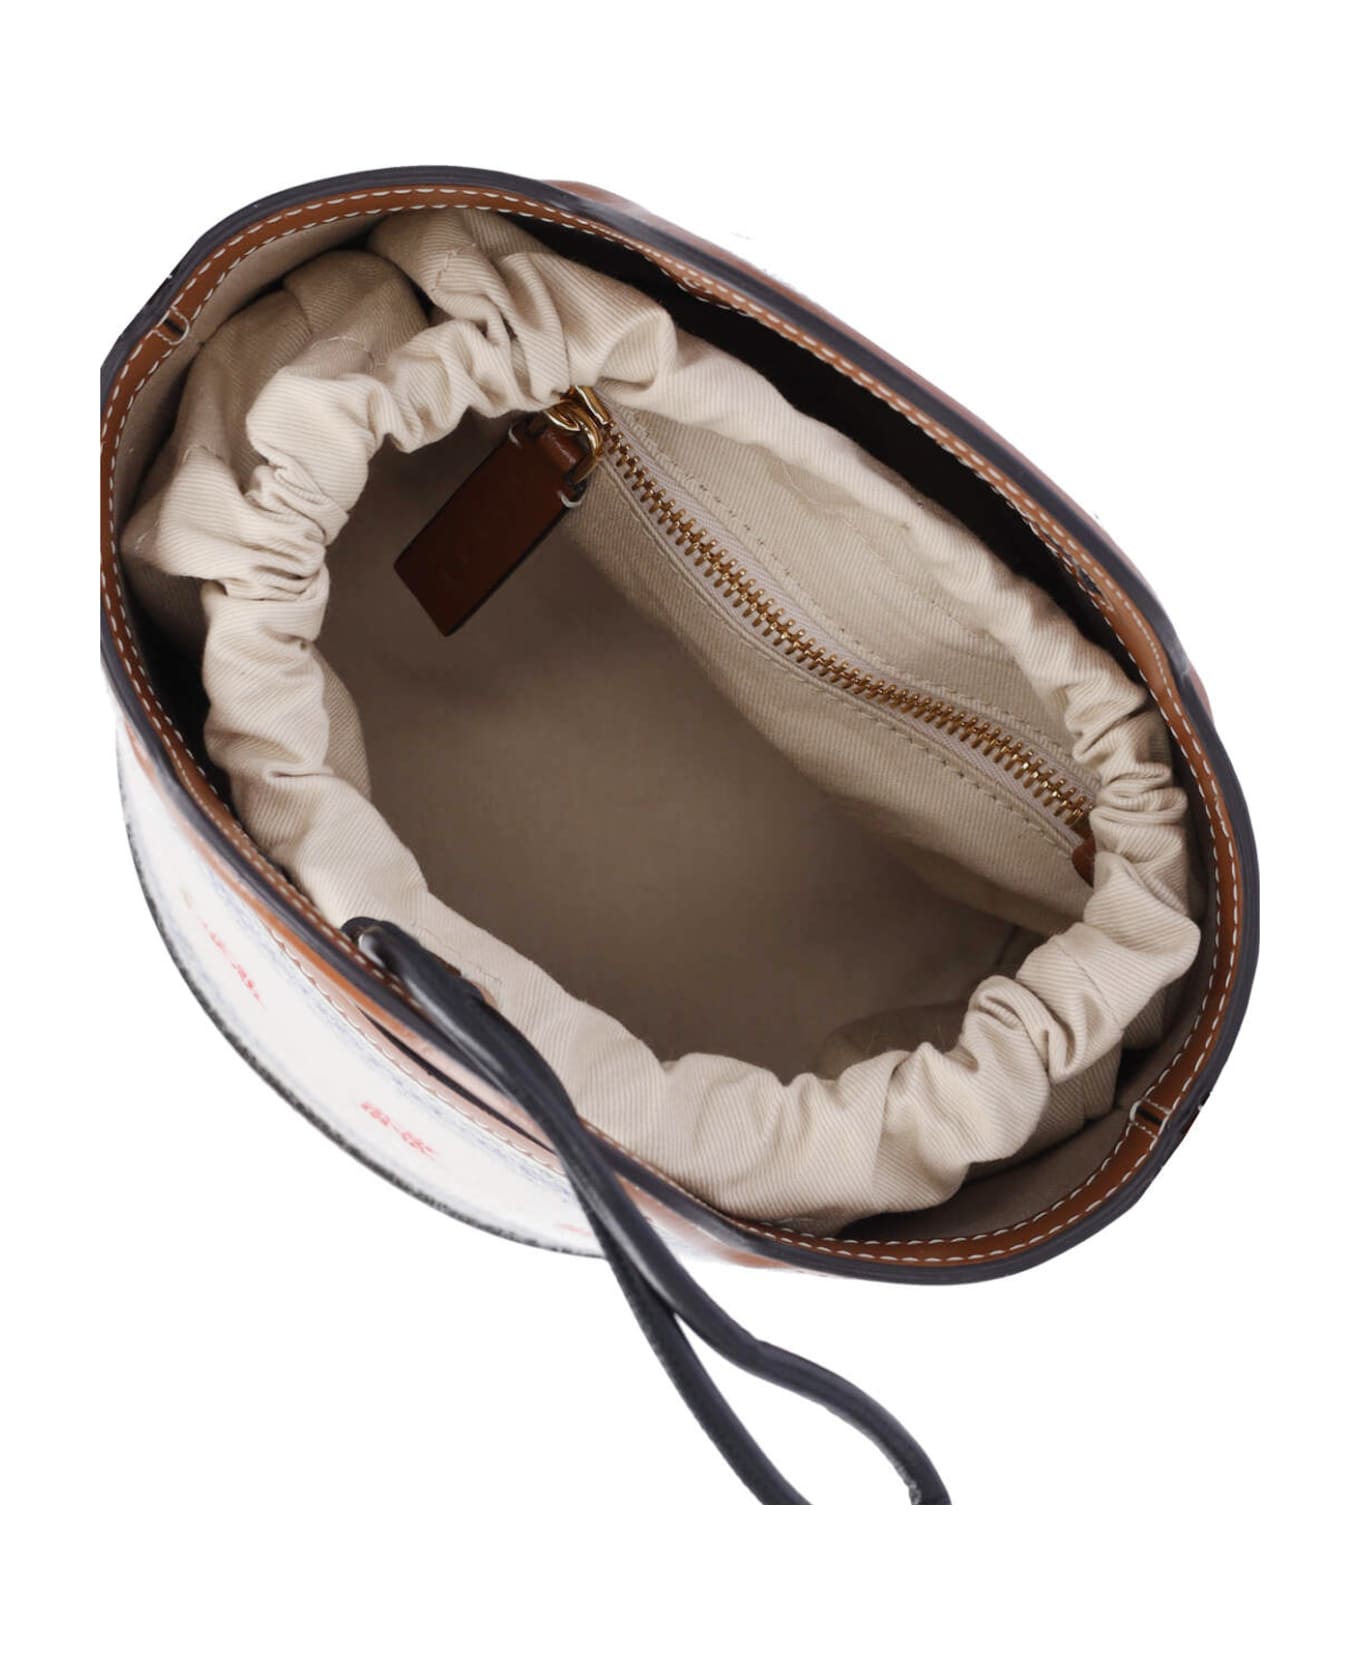 Marni Small Bucket Bag 'tropicalia' - Natural/moka